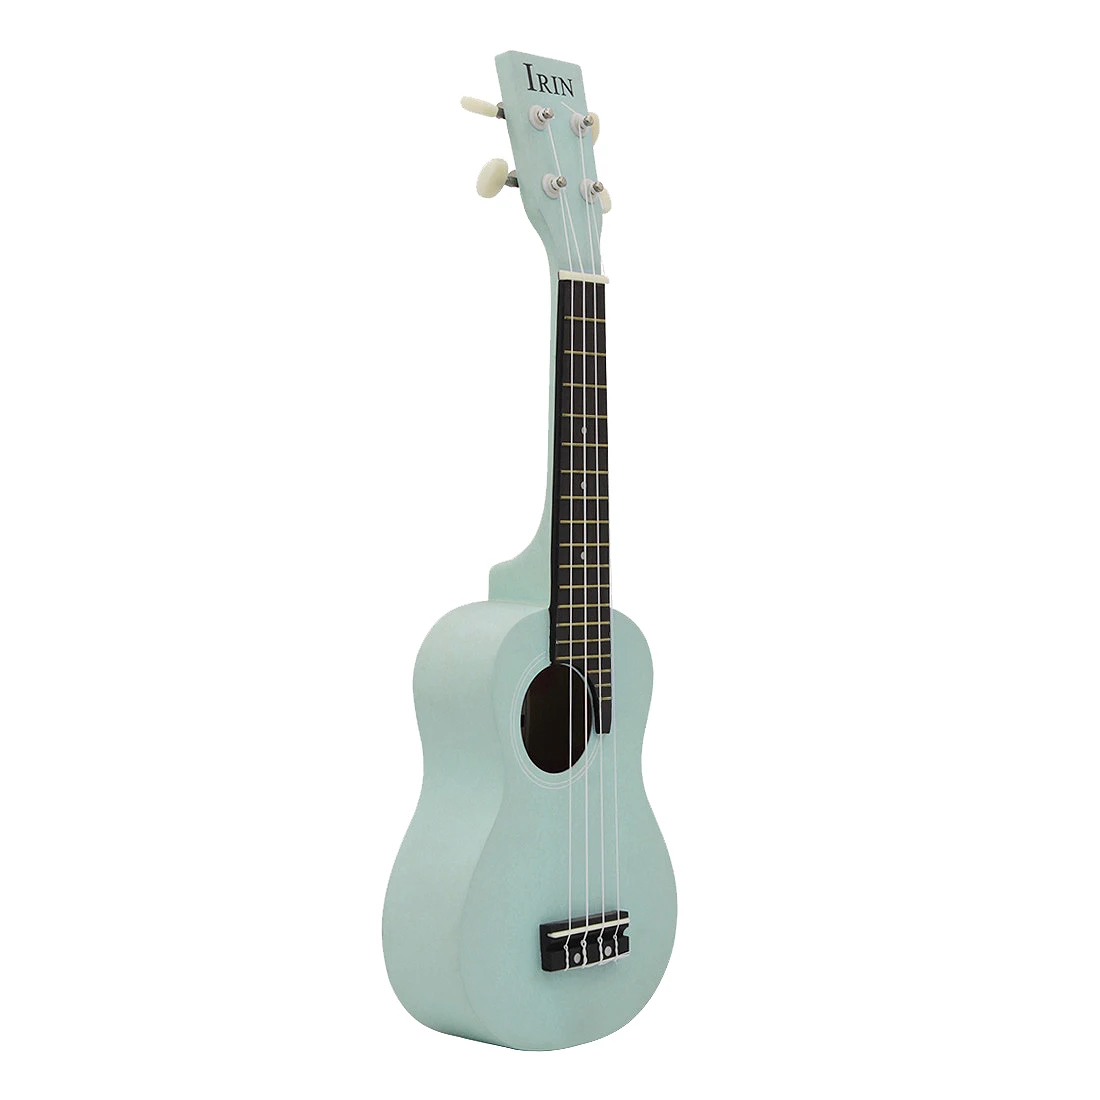 BMDT-Irin сопрано укулеле 21 дюймов 18 ладов 4 струны акустическая укулеле гитара для начинающих или Basic Playersuke